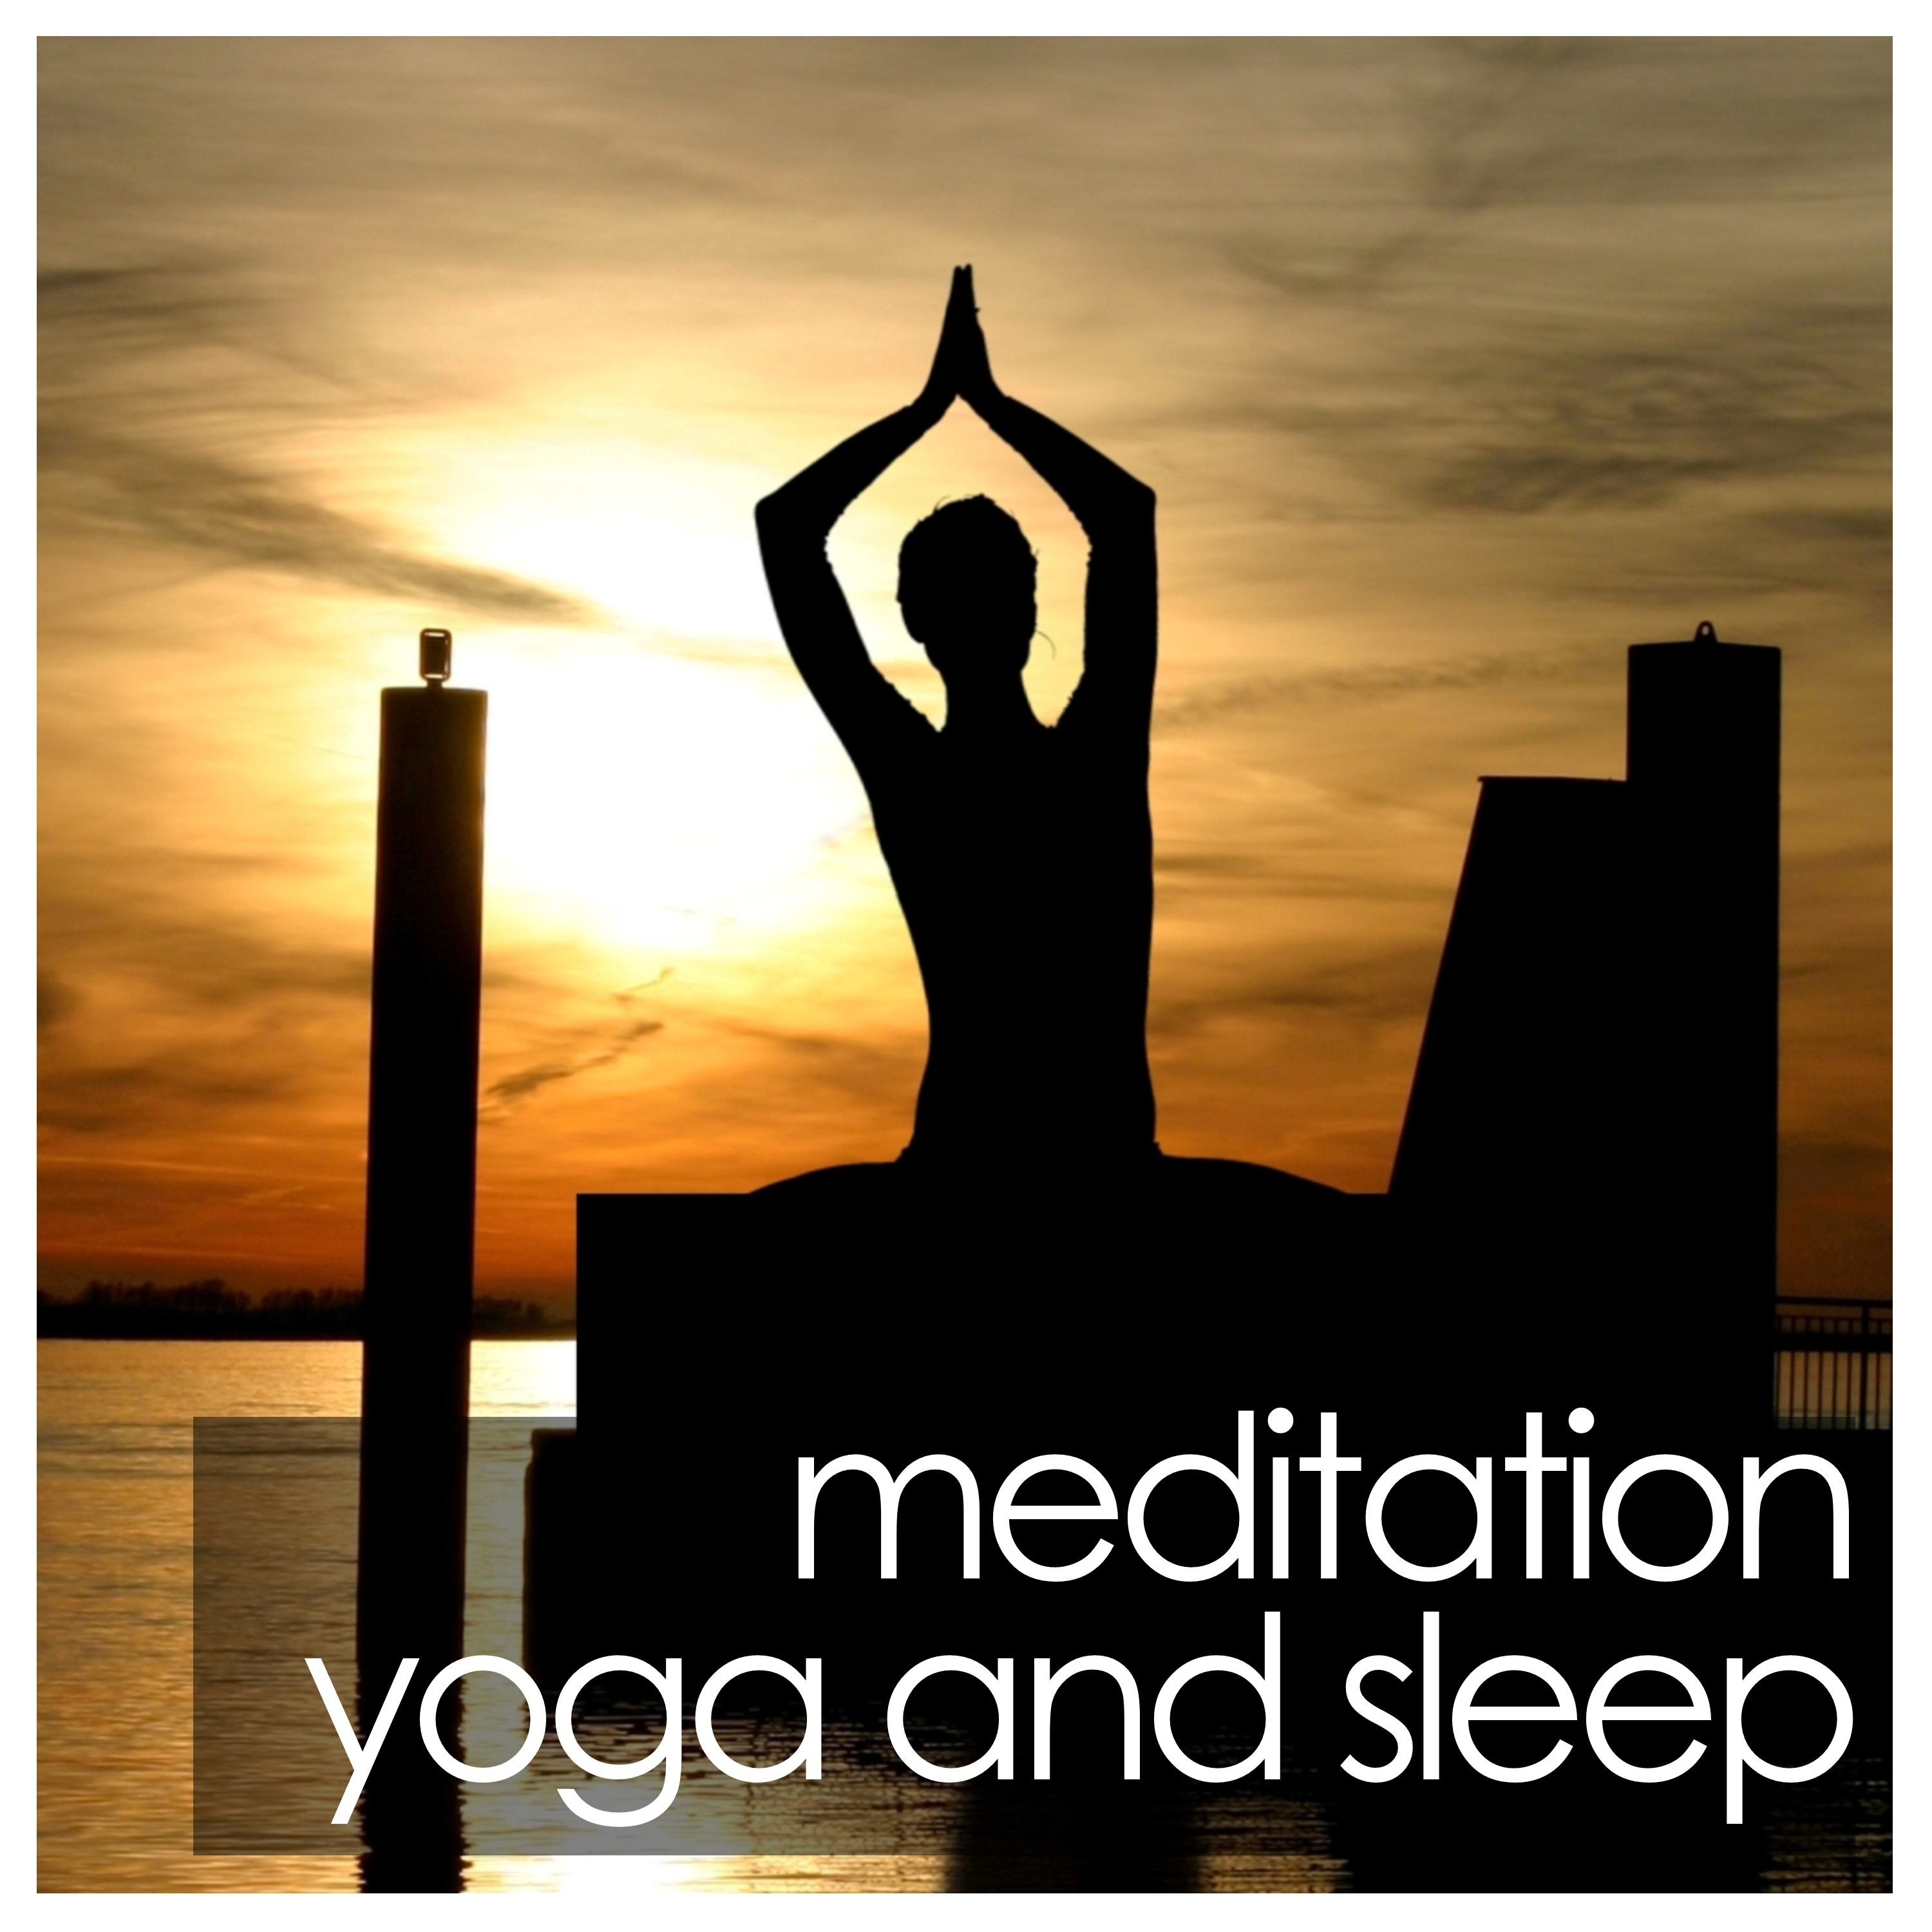 15 Rain Sounds for Meditation, Yoga Relaxation and Sleep